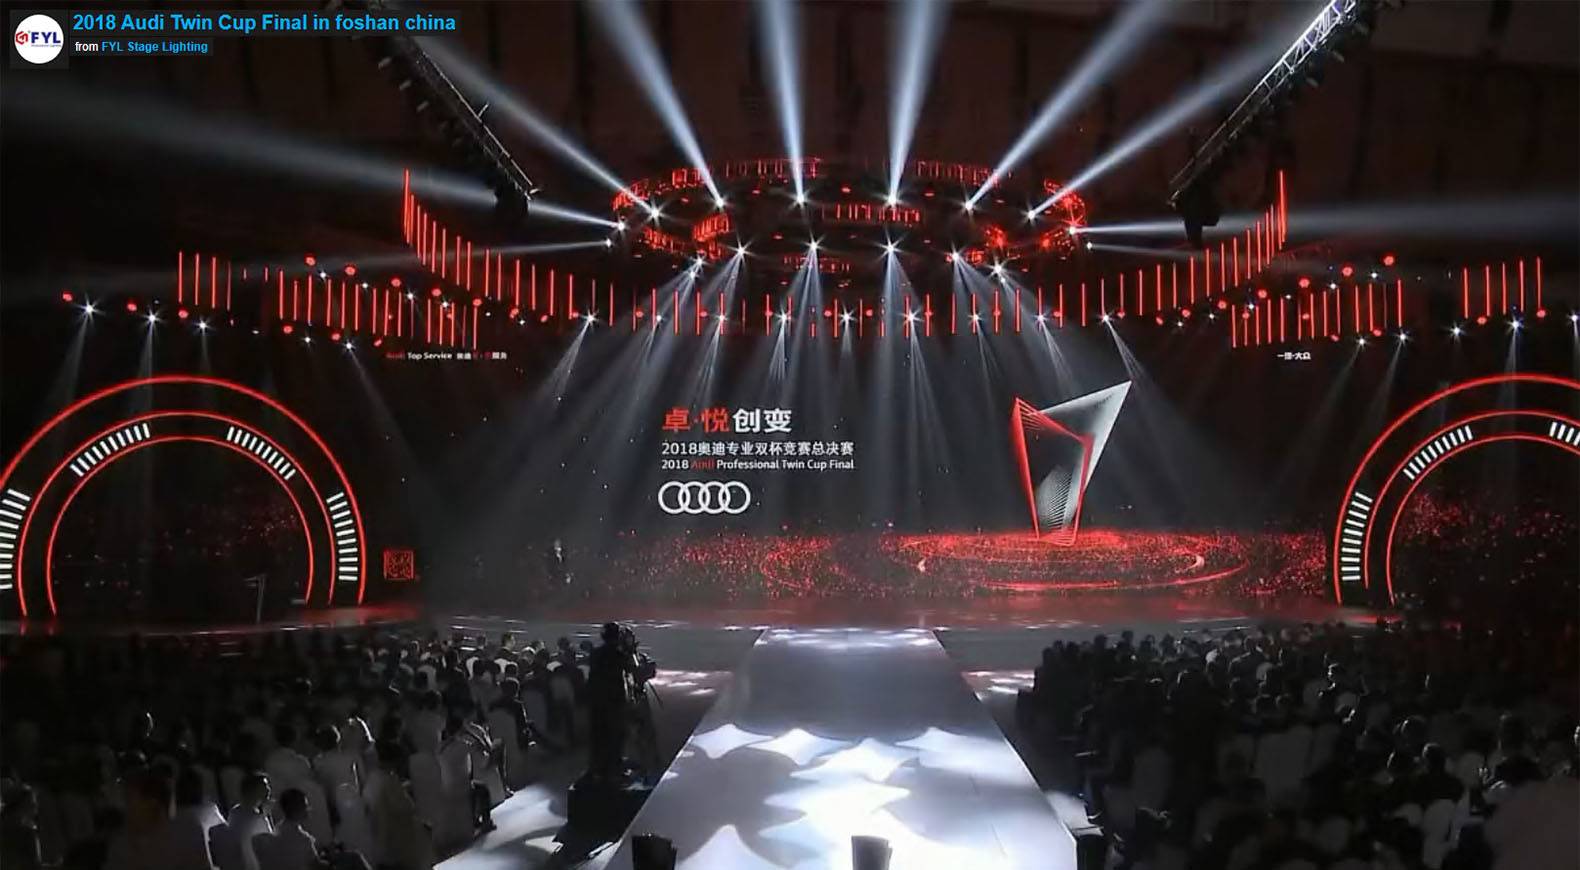 2018 Audi Twin Cup Final muFoshan China